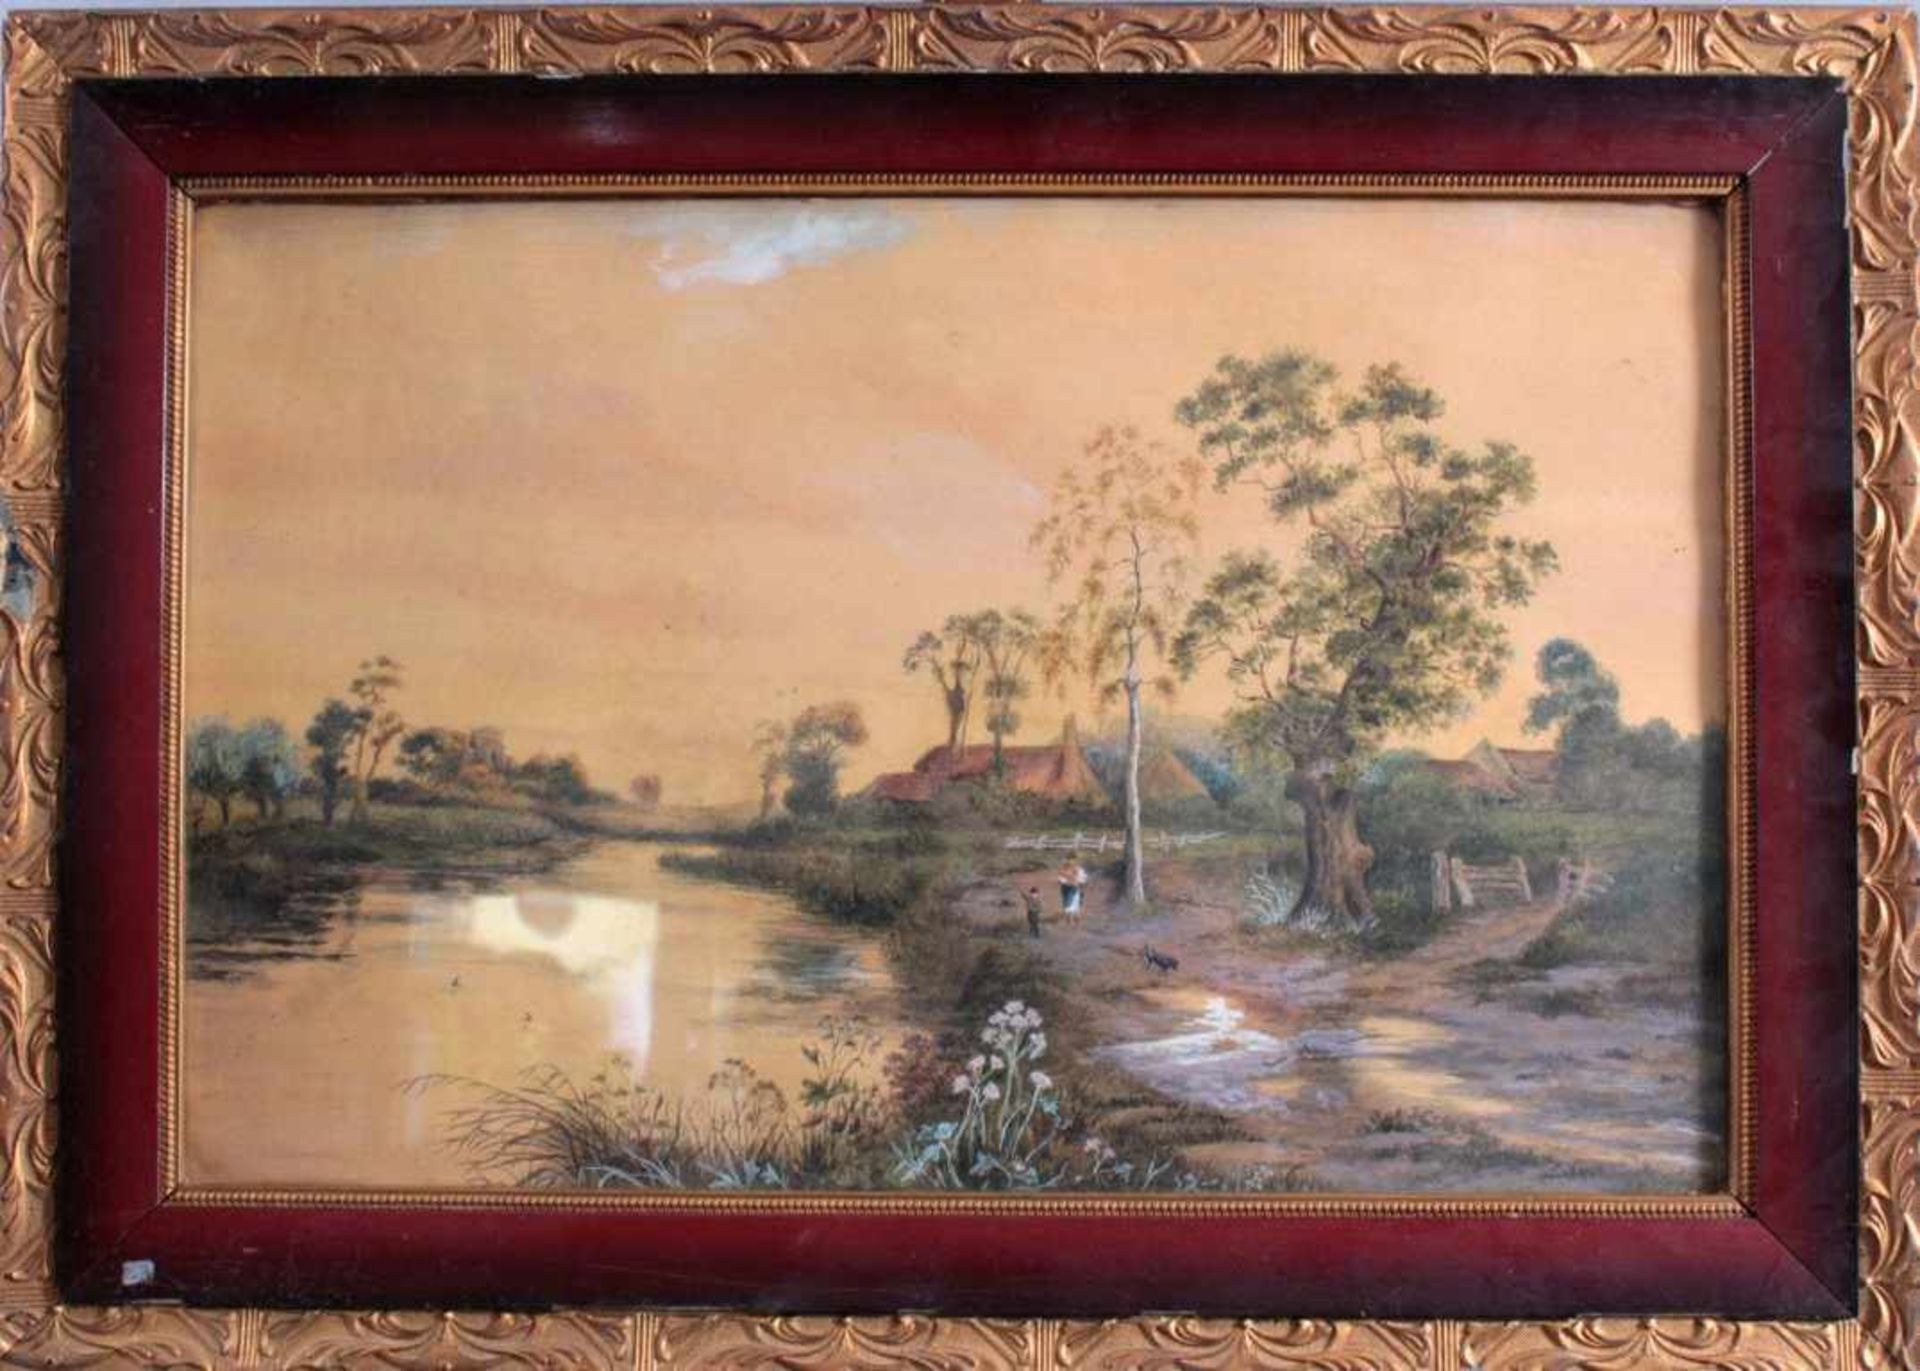 Aquarell 19. JahrhundertAquarell auf Pappe. Unbekannter Künstler, "Landschaft mitFiguren, Fluss